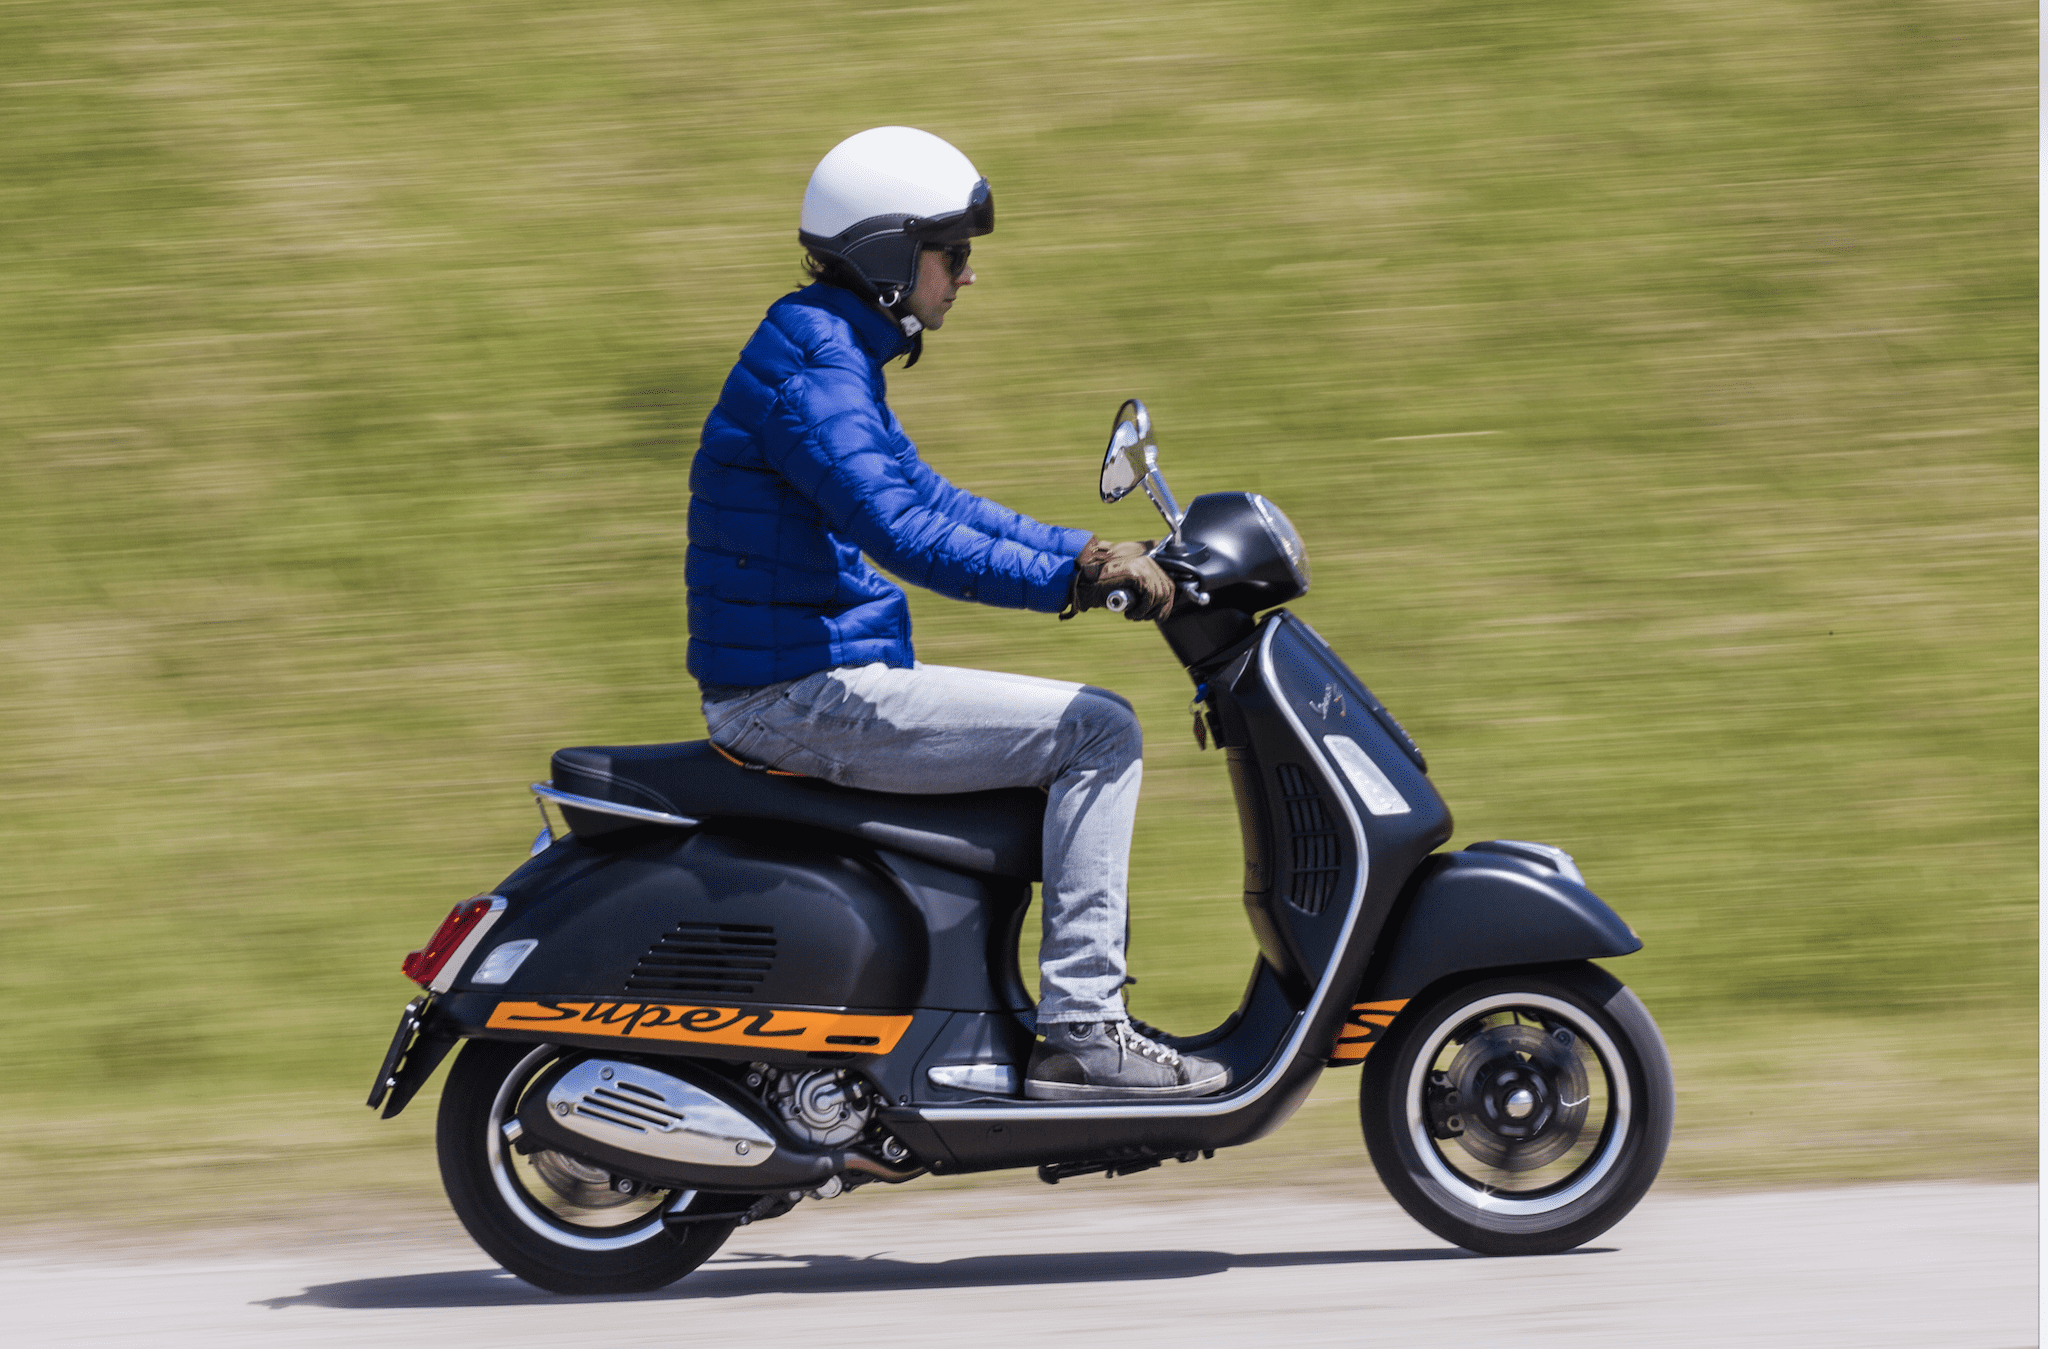 Aantal inschrijvingen motoren en scooters gestegen in België